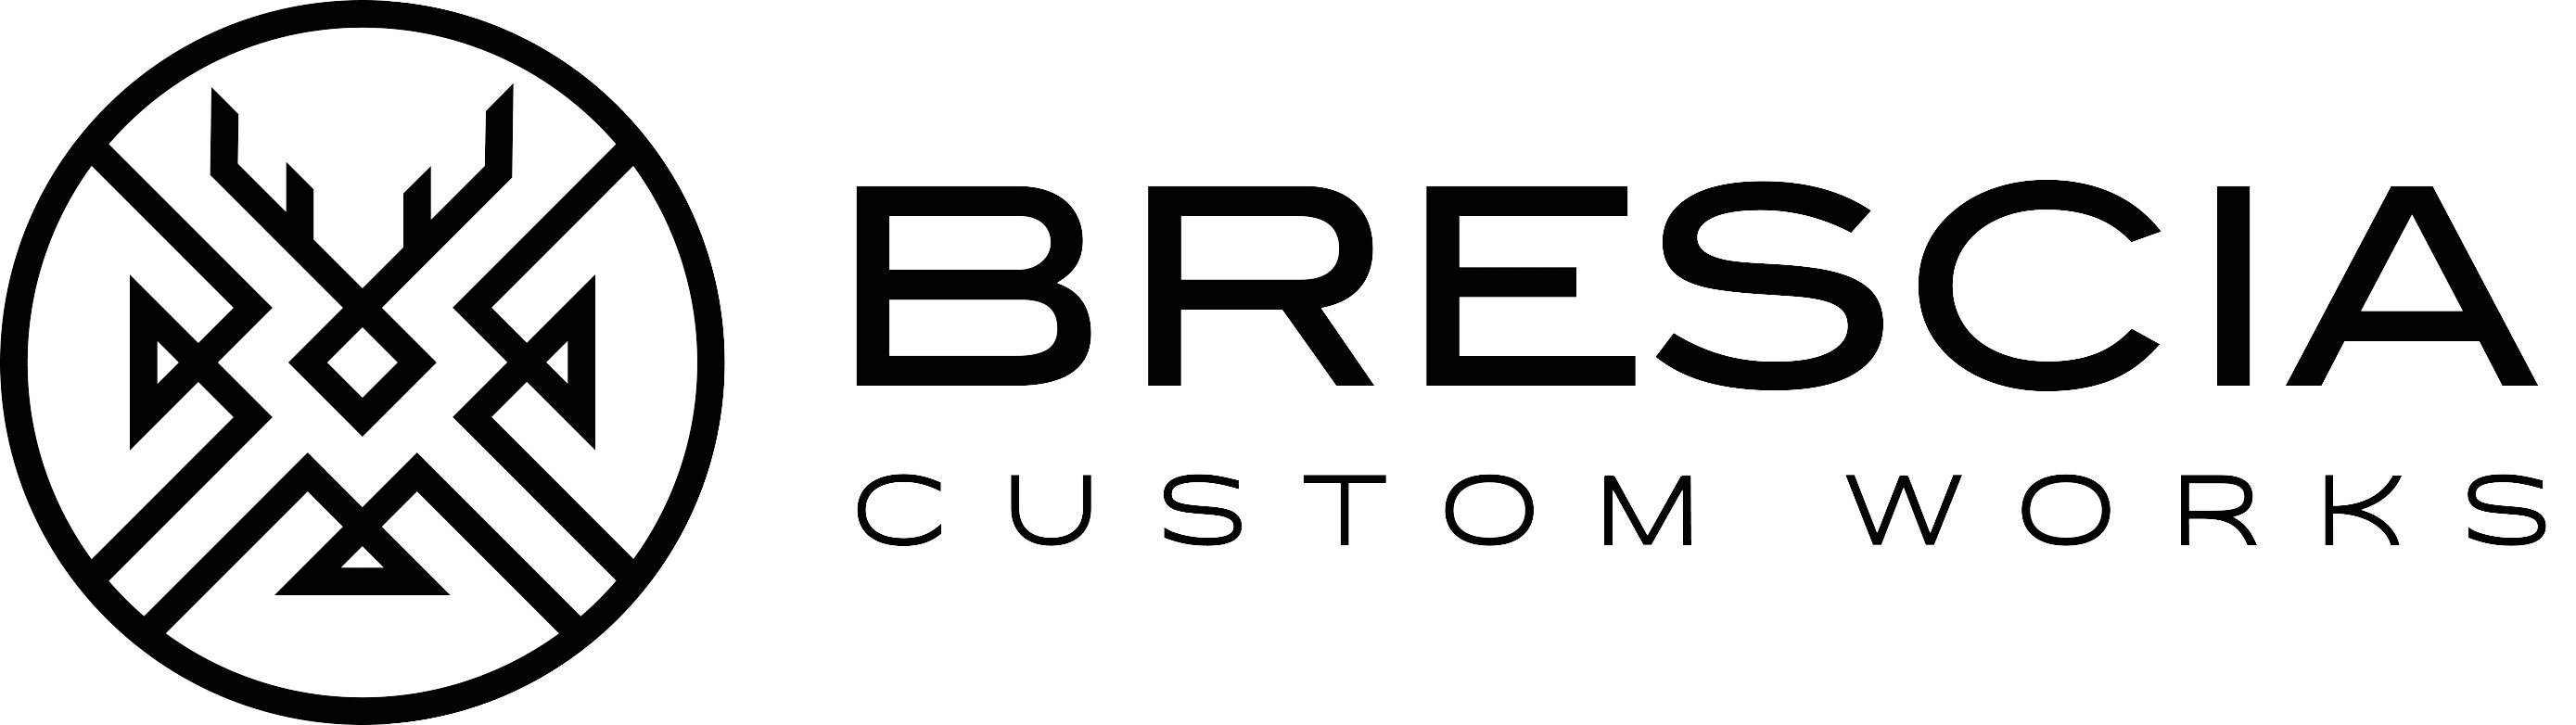 BCW Brescia Custom Works logo